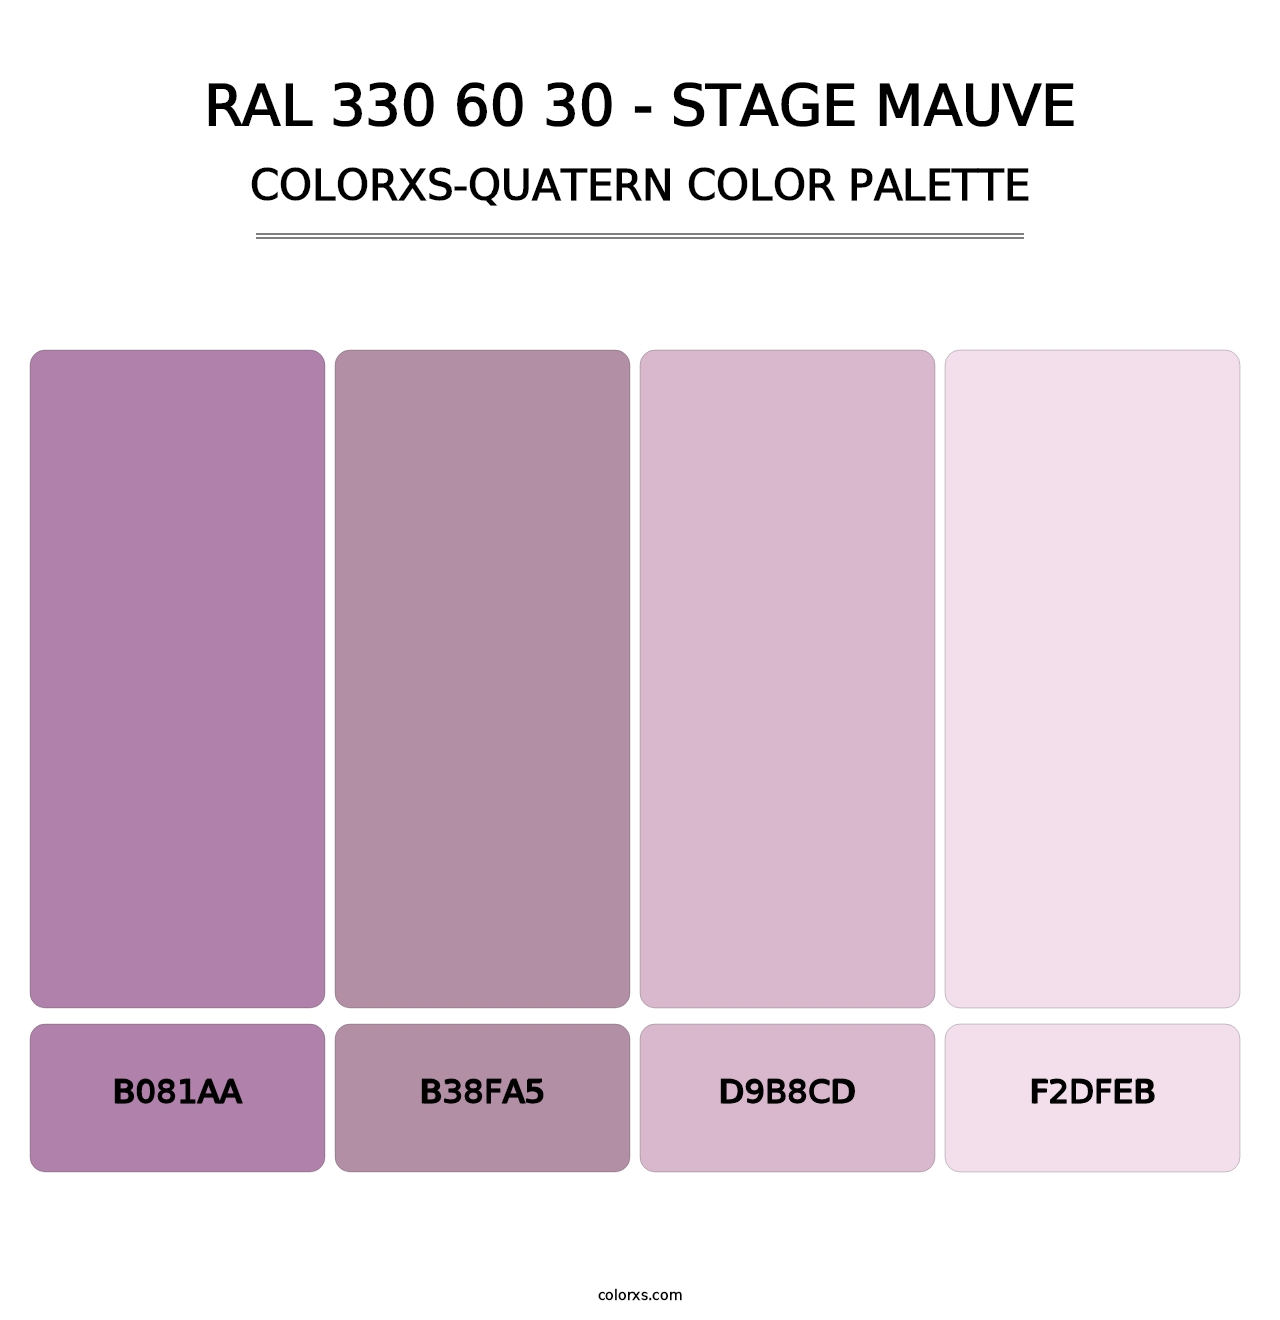 RAL 330 60 30 - Stage Mauve - Colorxs Quatern Palette